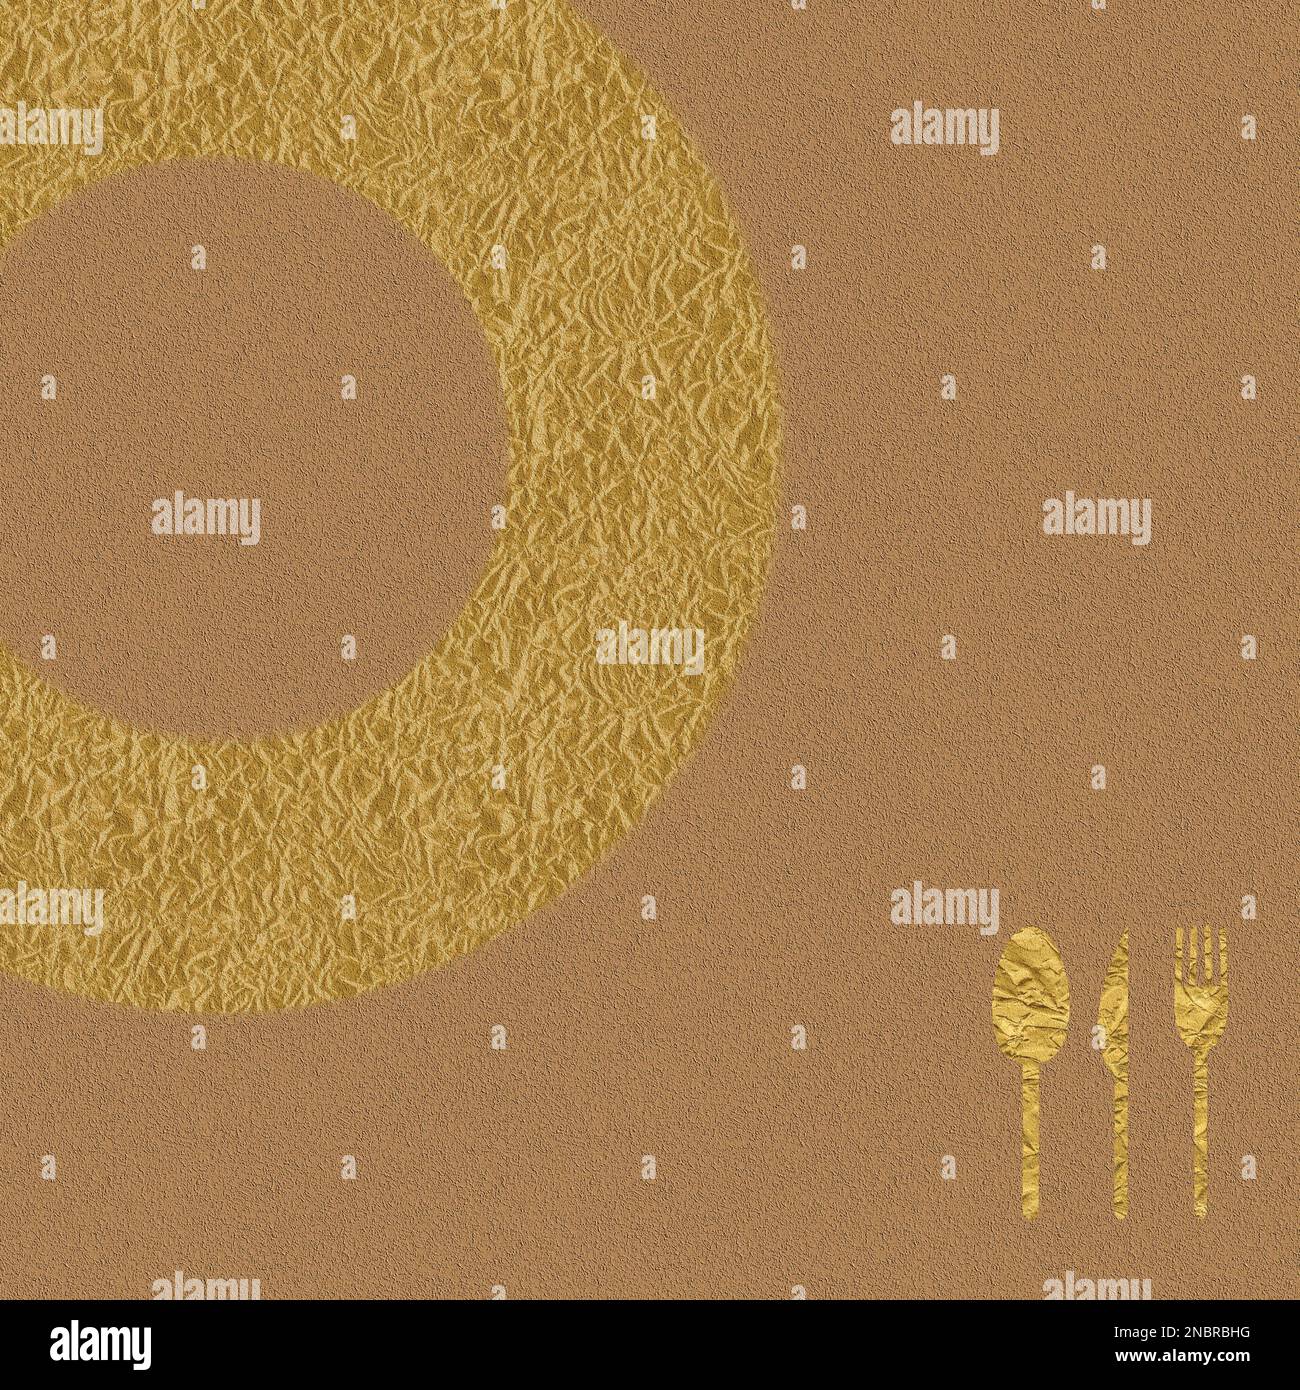 Motif couverture de menu avec couteau, cuillère et fourchette dans des tons dorés, image carrée Banque D'Images